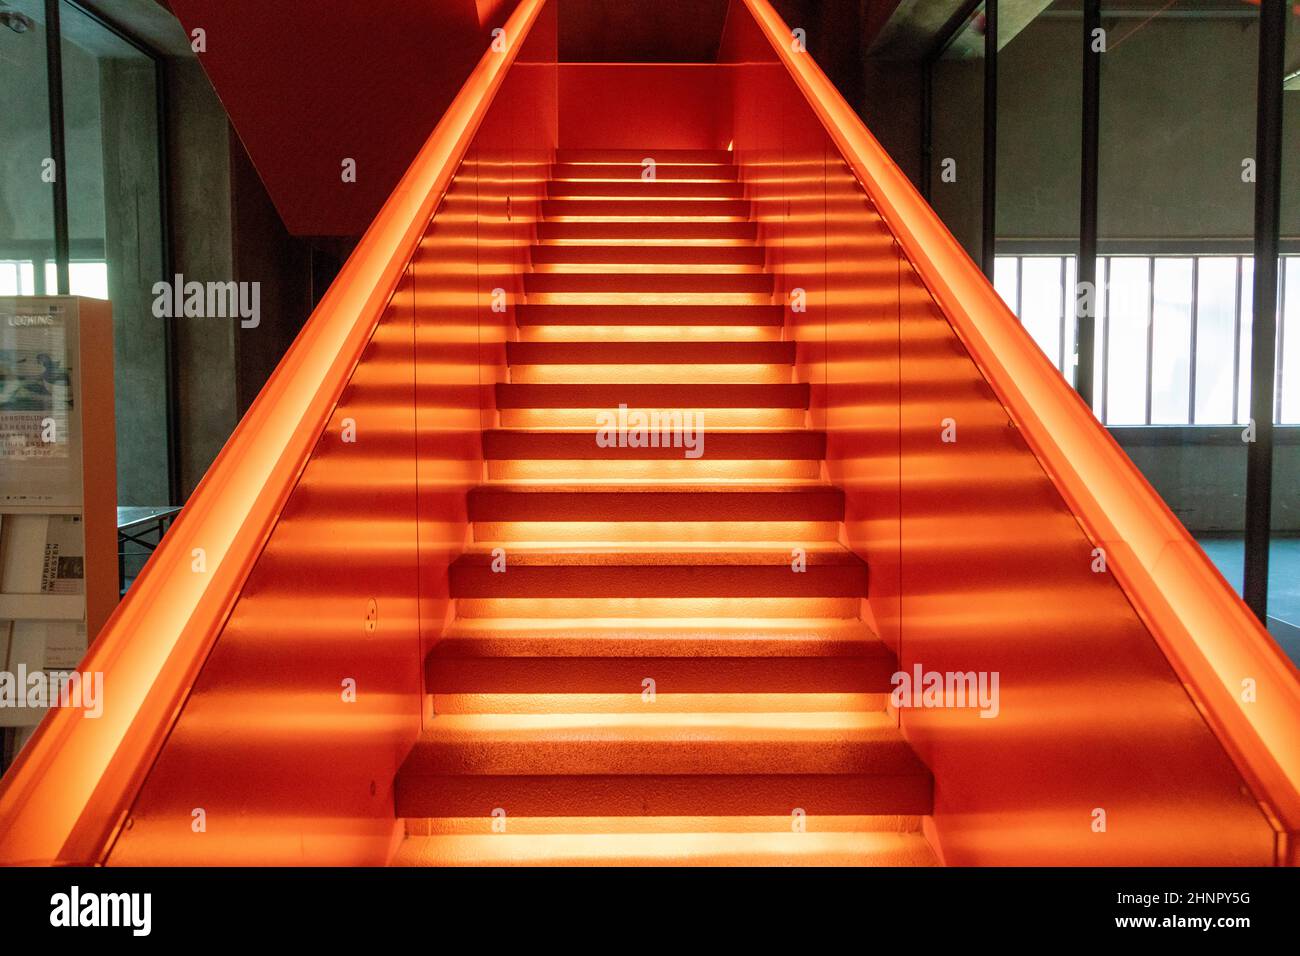 Vue antérieure de la belle orange lumineux escalier remarquable est situé à l'entrée du musée Ruhr à Zeche Zollverein, complexe industriel de la mine de charbon Zollverein. Banque D'Images